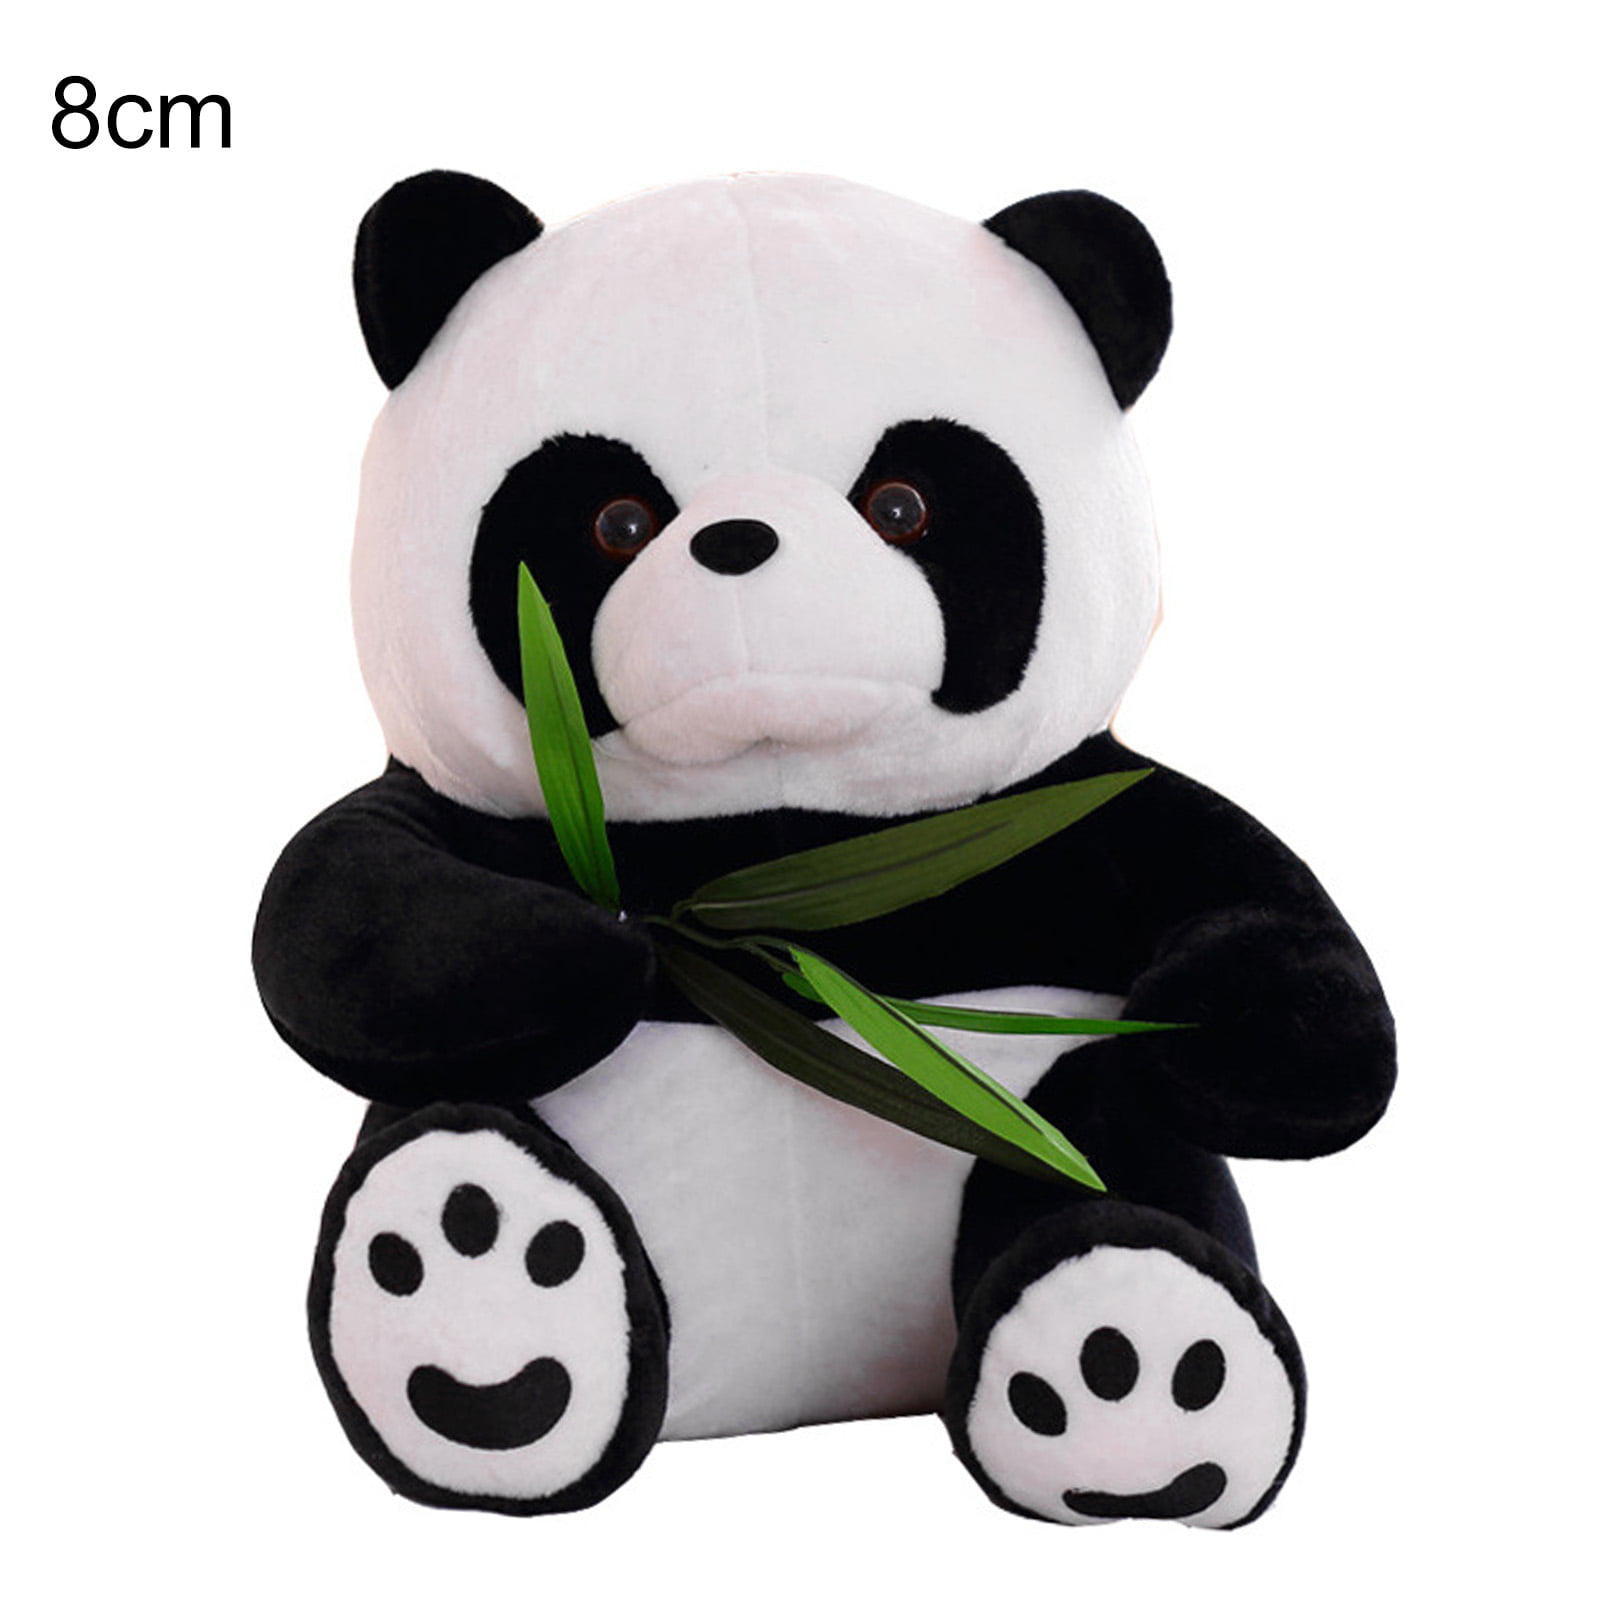 Panda roux Stuffed Animal: Panda roux Plush Squishy Soft Toy